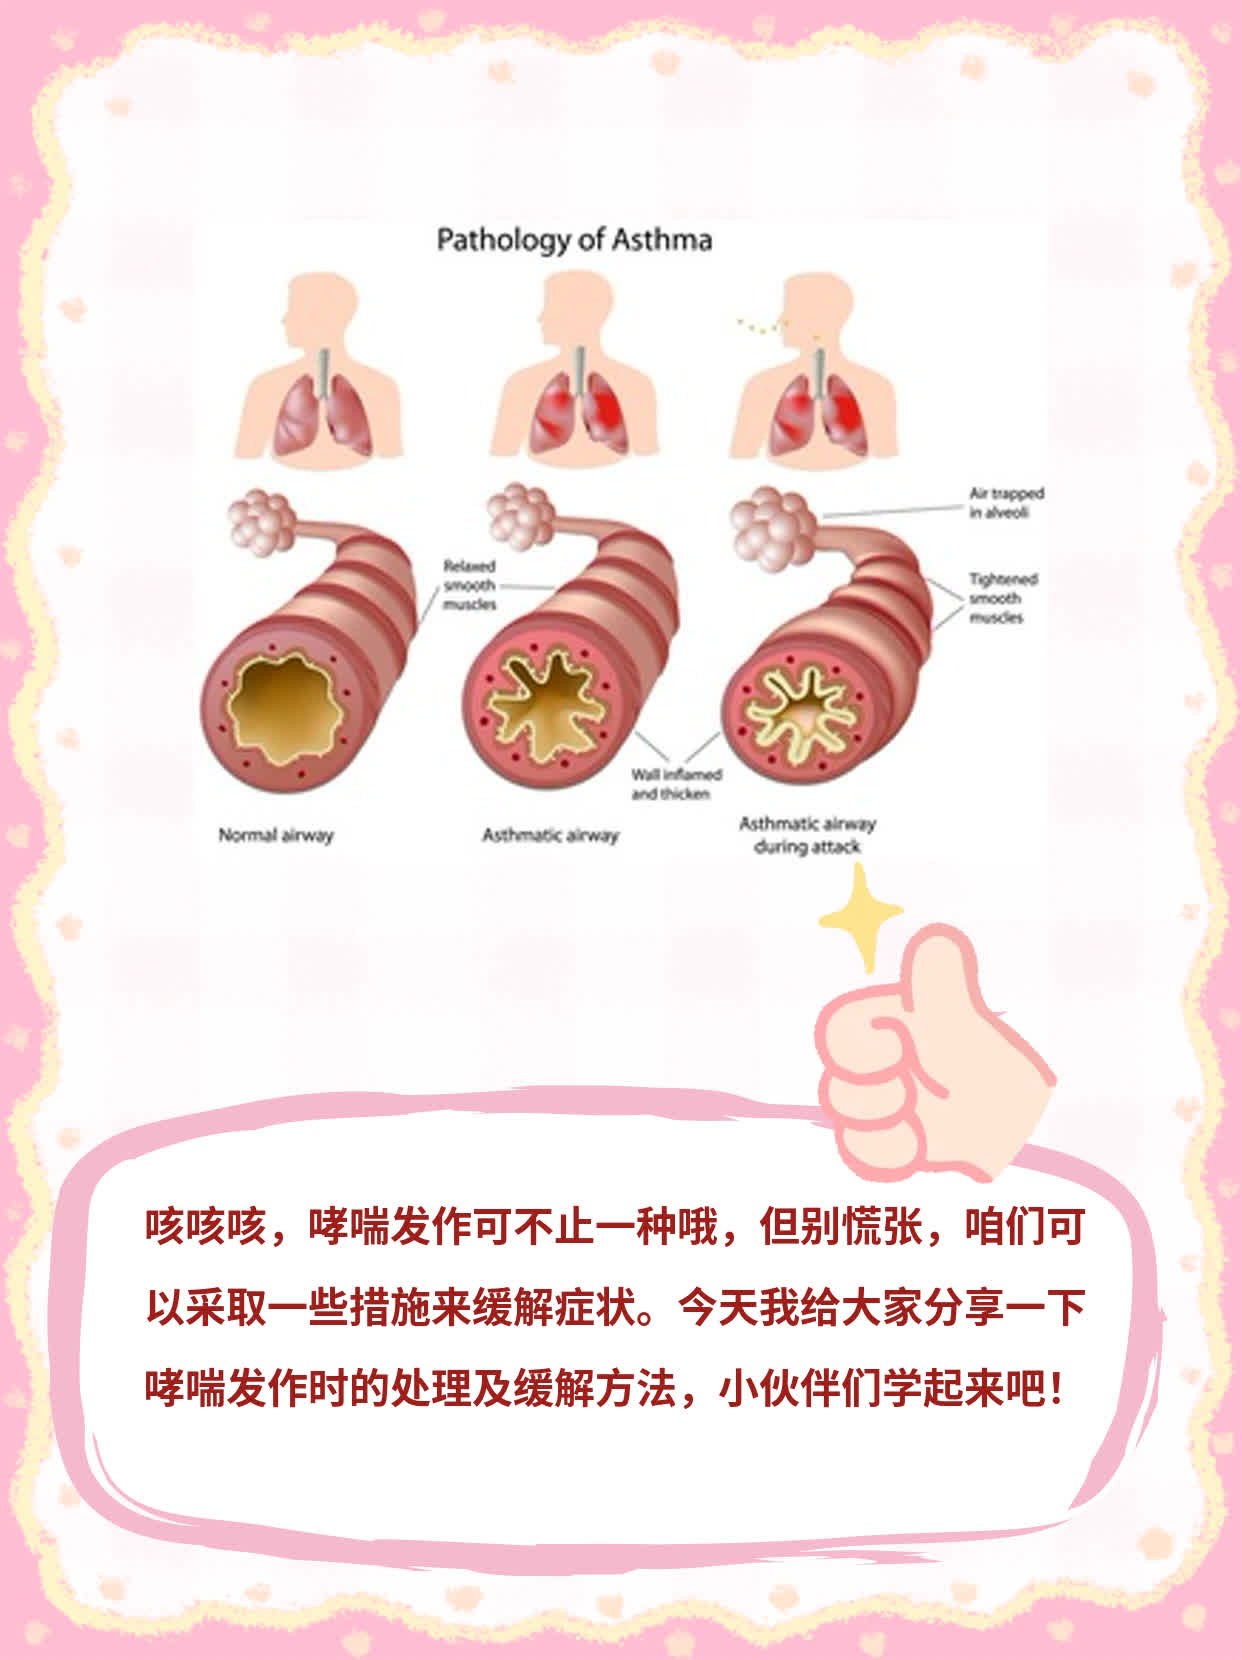 「哮喘发作」：发作时的处理及缓解方法分享！